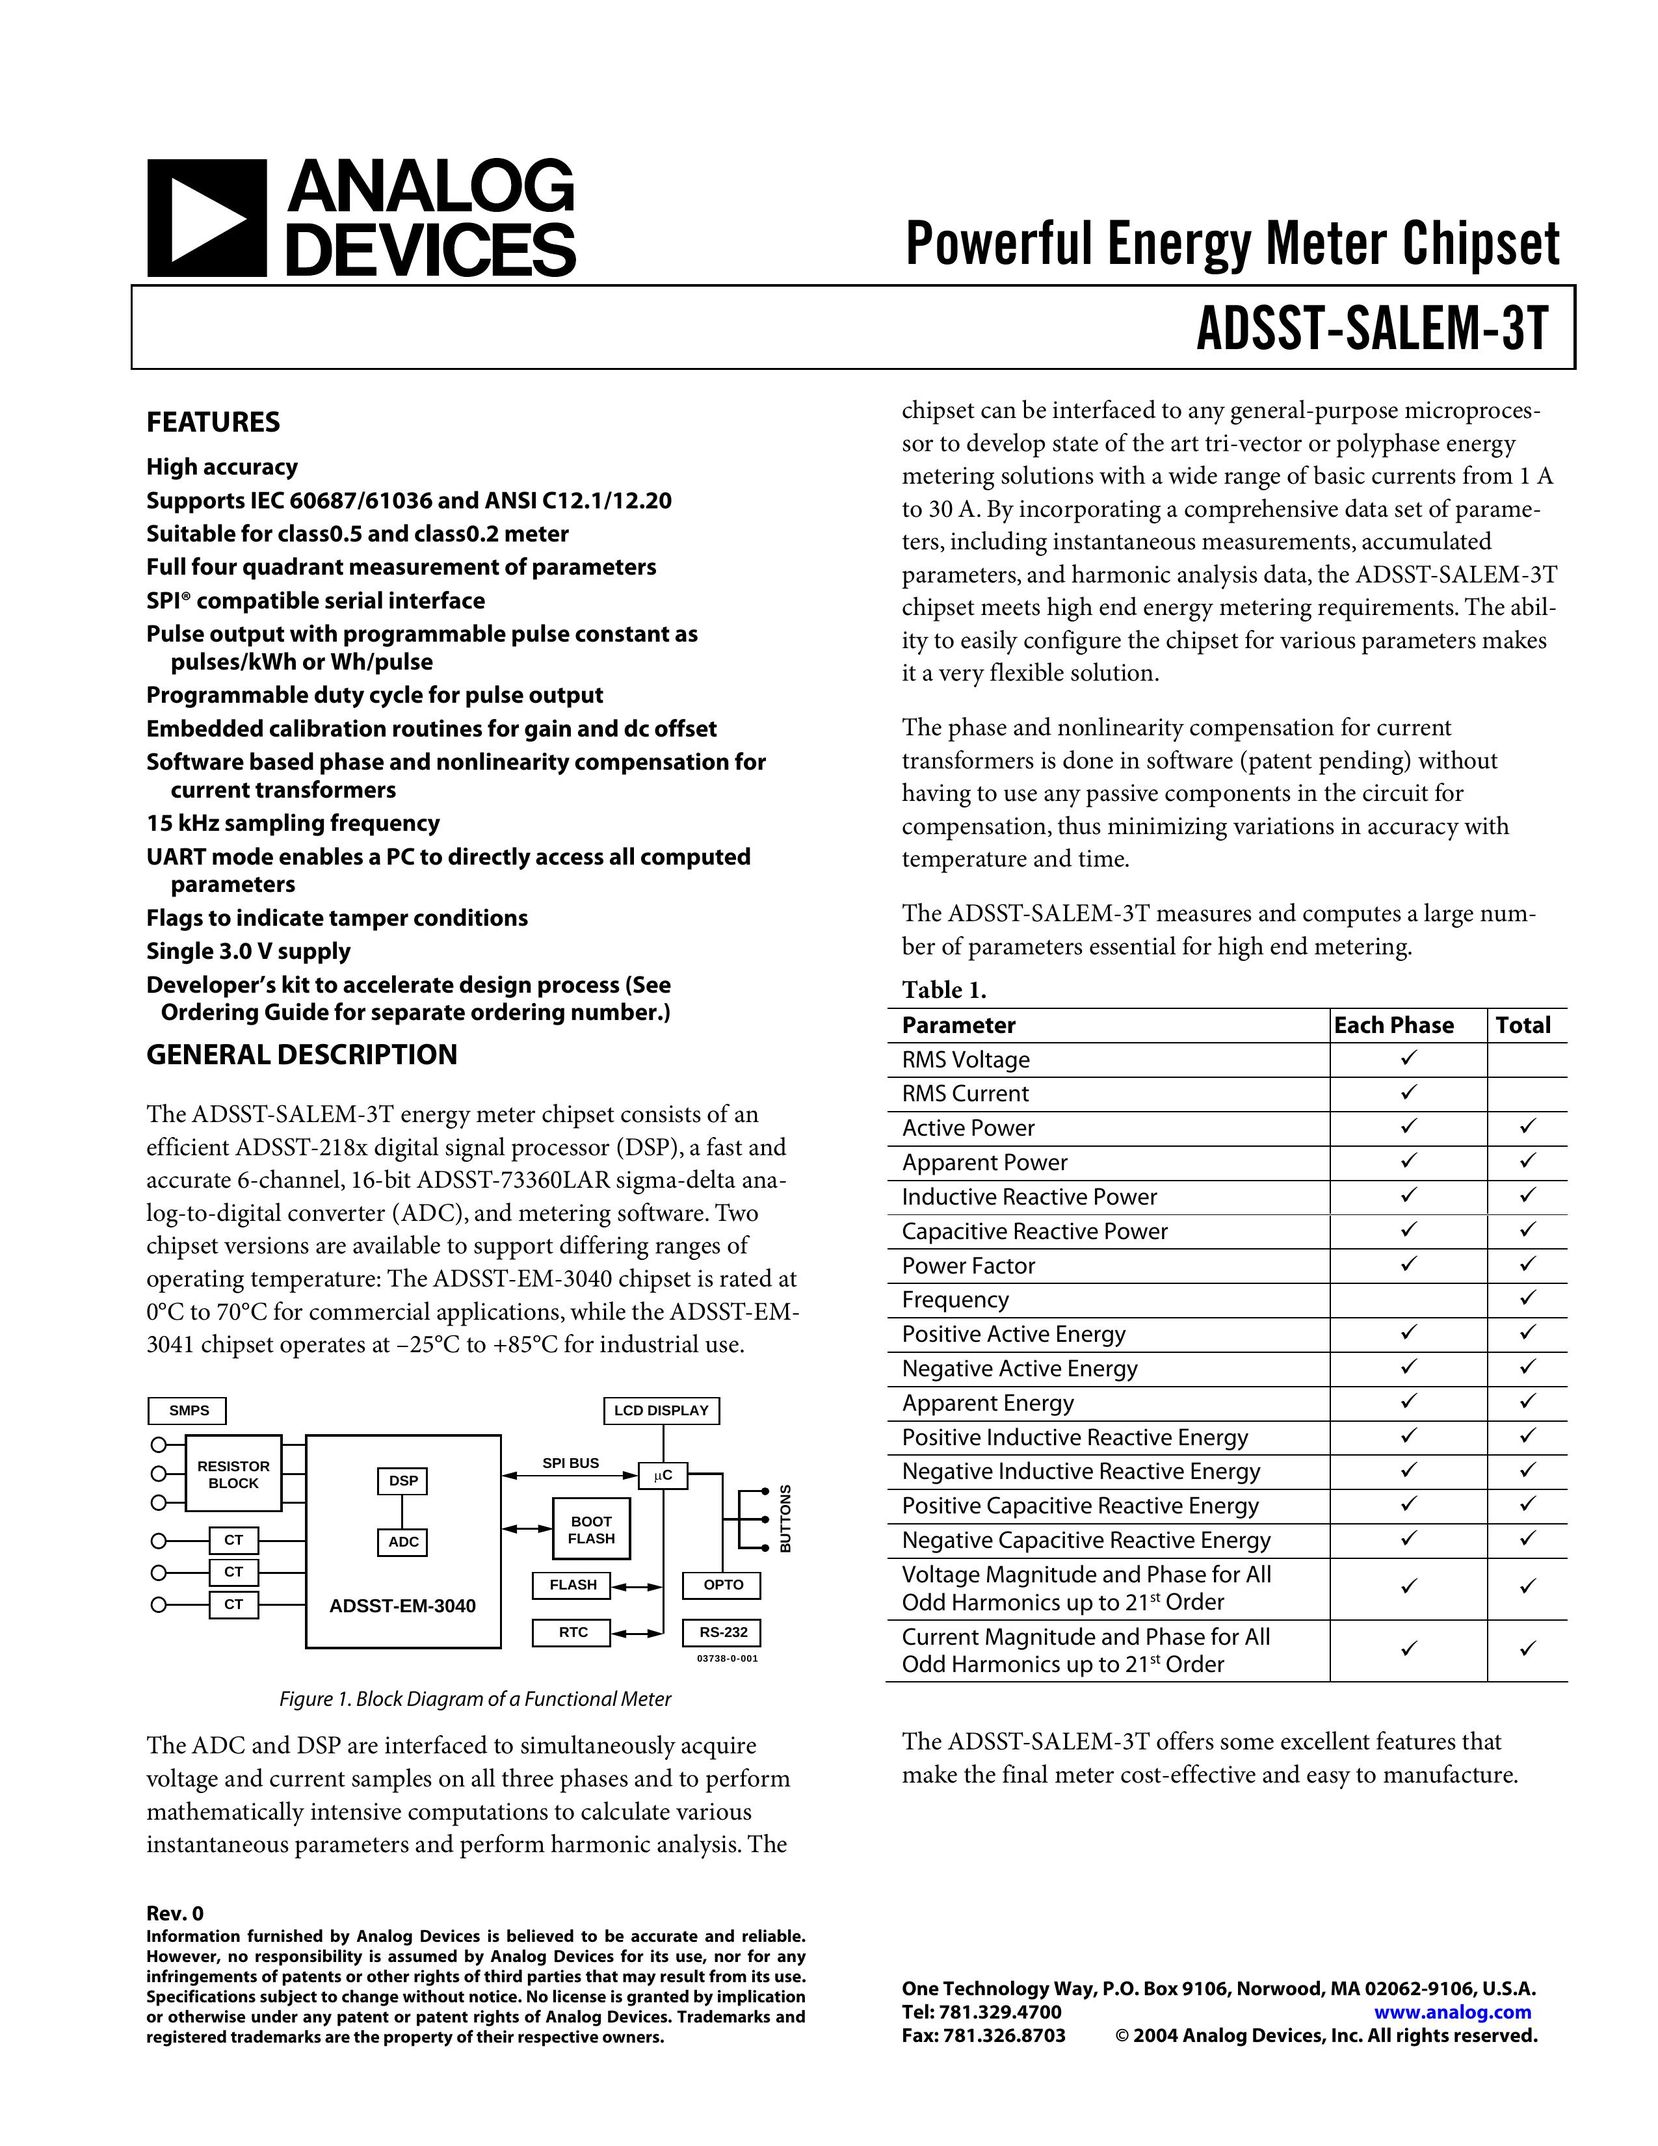 Analog Devices ADSST-SALEM-3T Computer Hardware User Manual